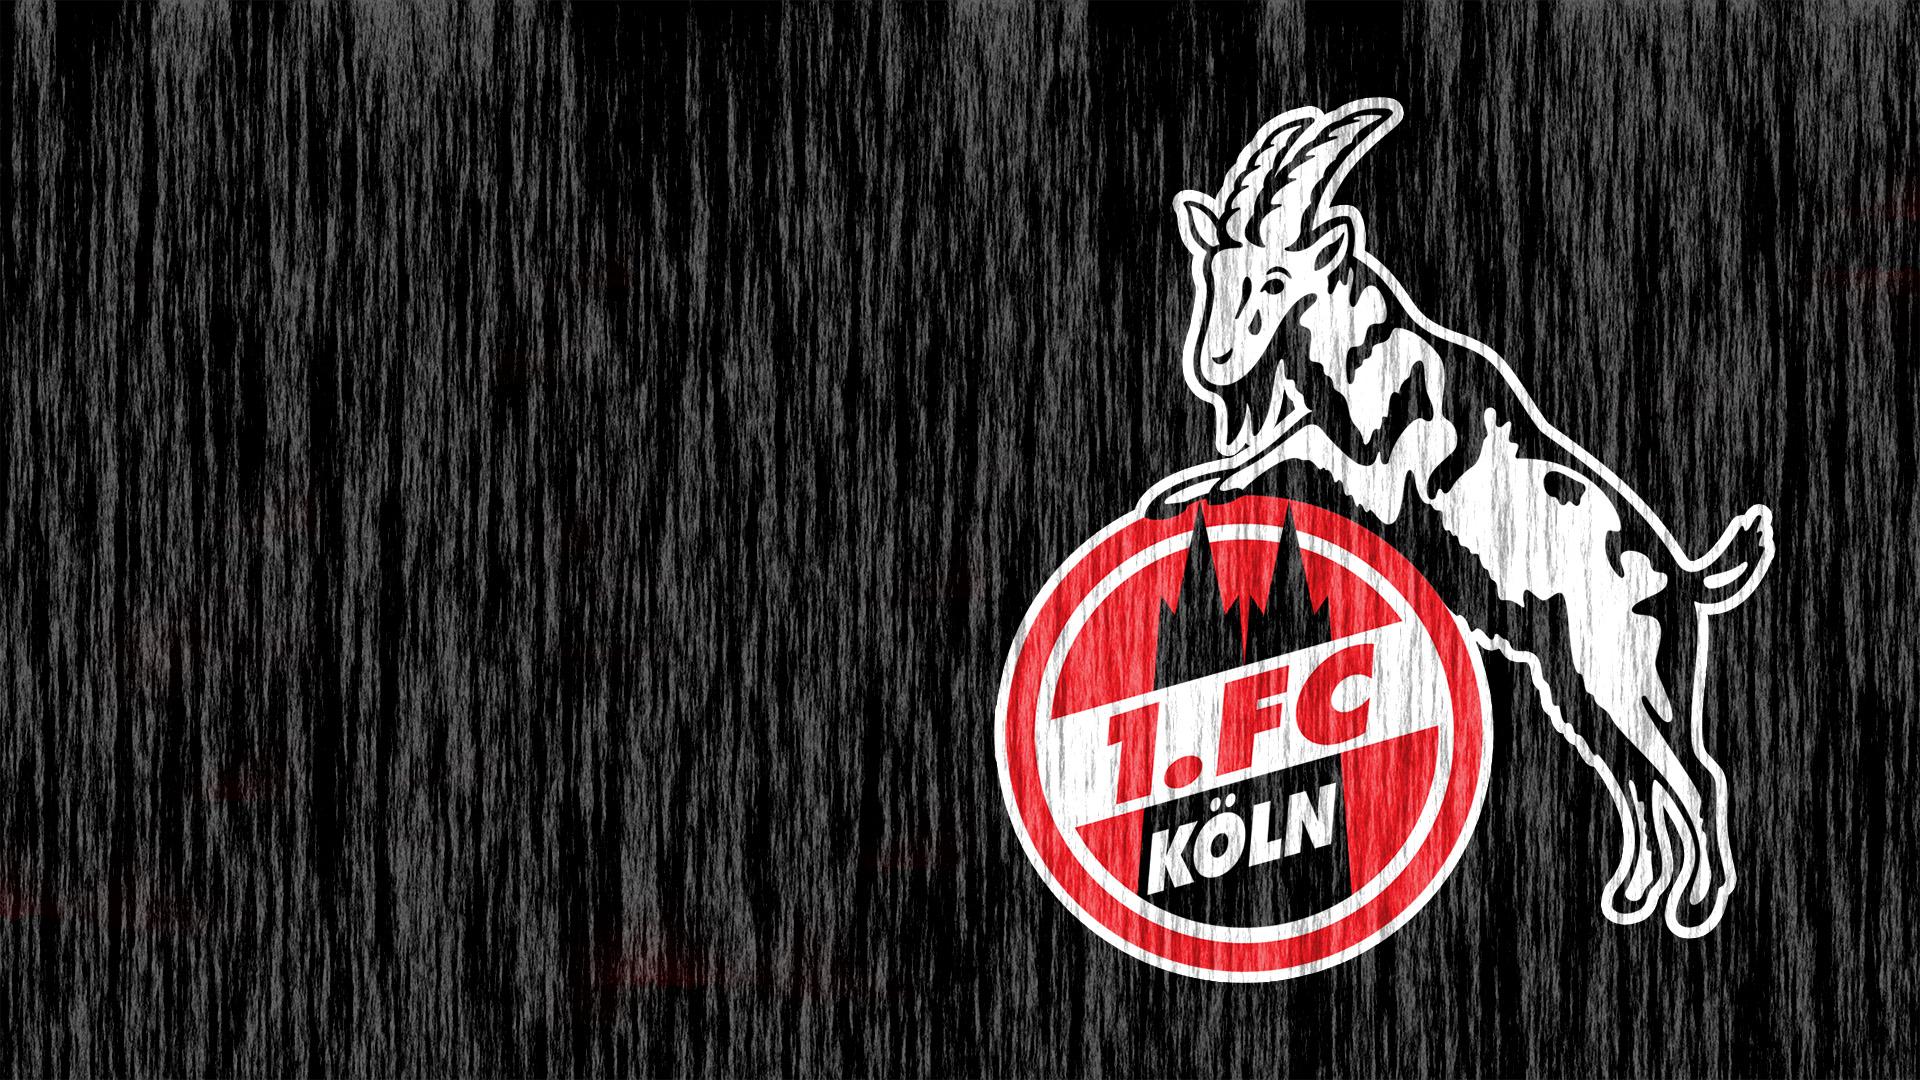 Fc Köln Wallpaper Handy - 1. FC Köln | Hintergrundbilder : Fc köln fc